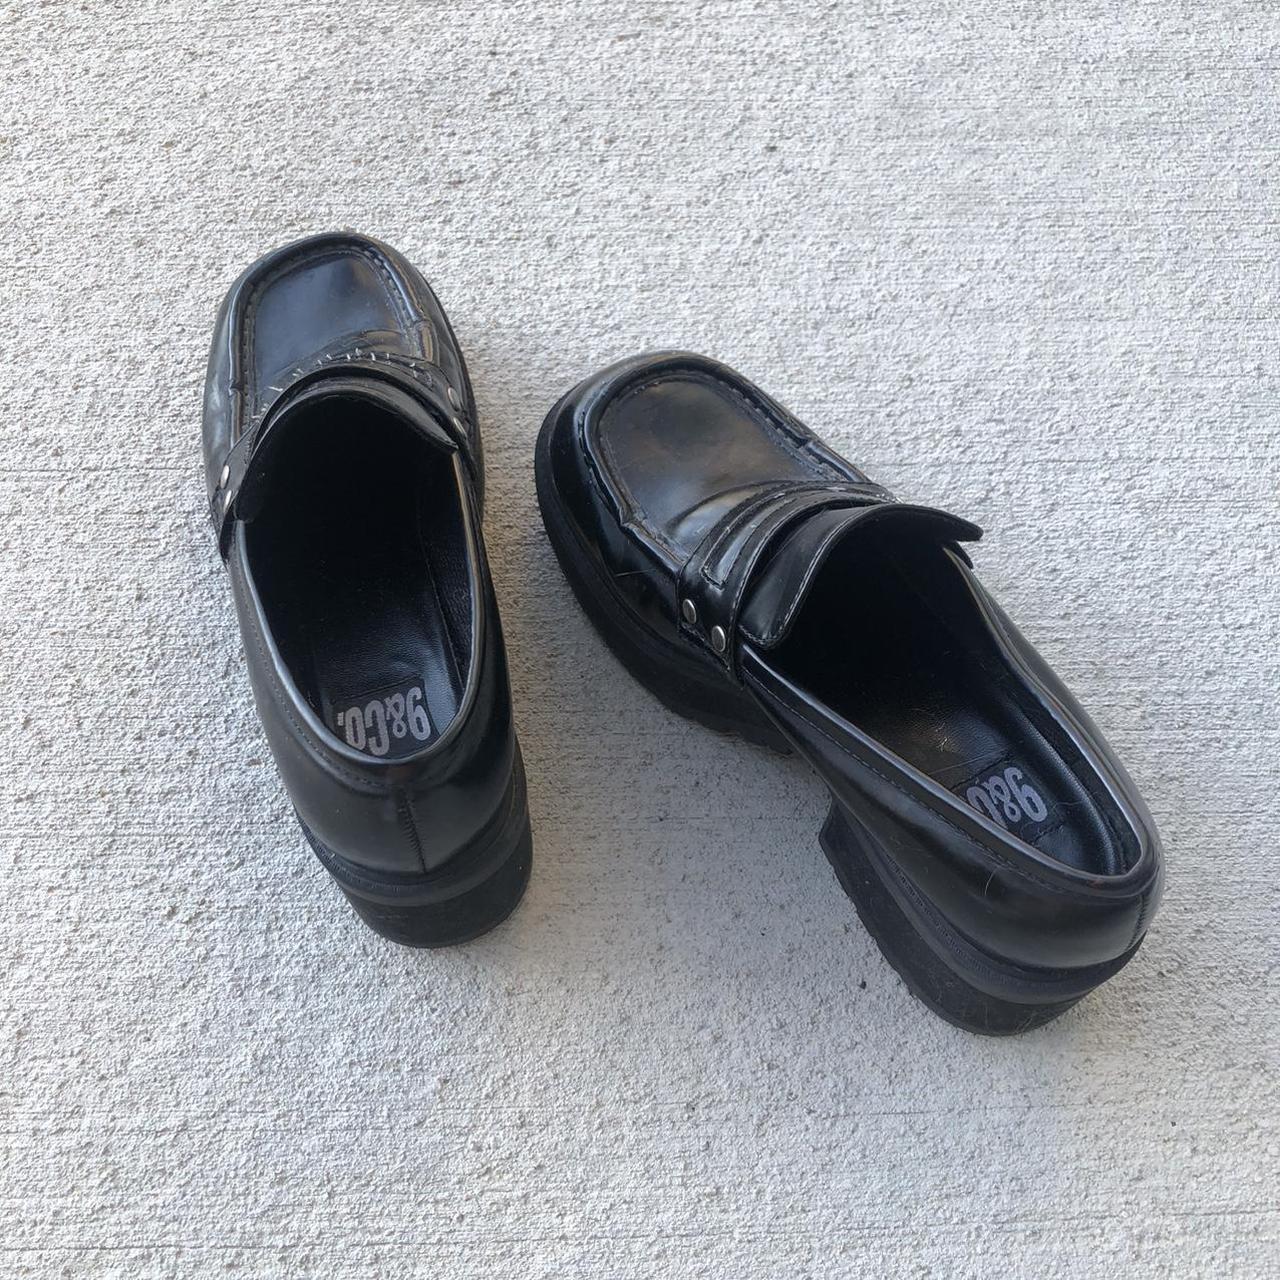 Insane vintage 90s black chunky platform loafers! In... - Depop